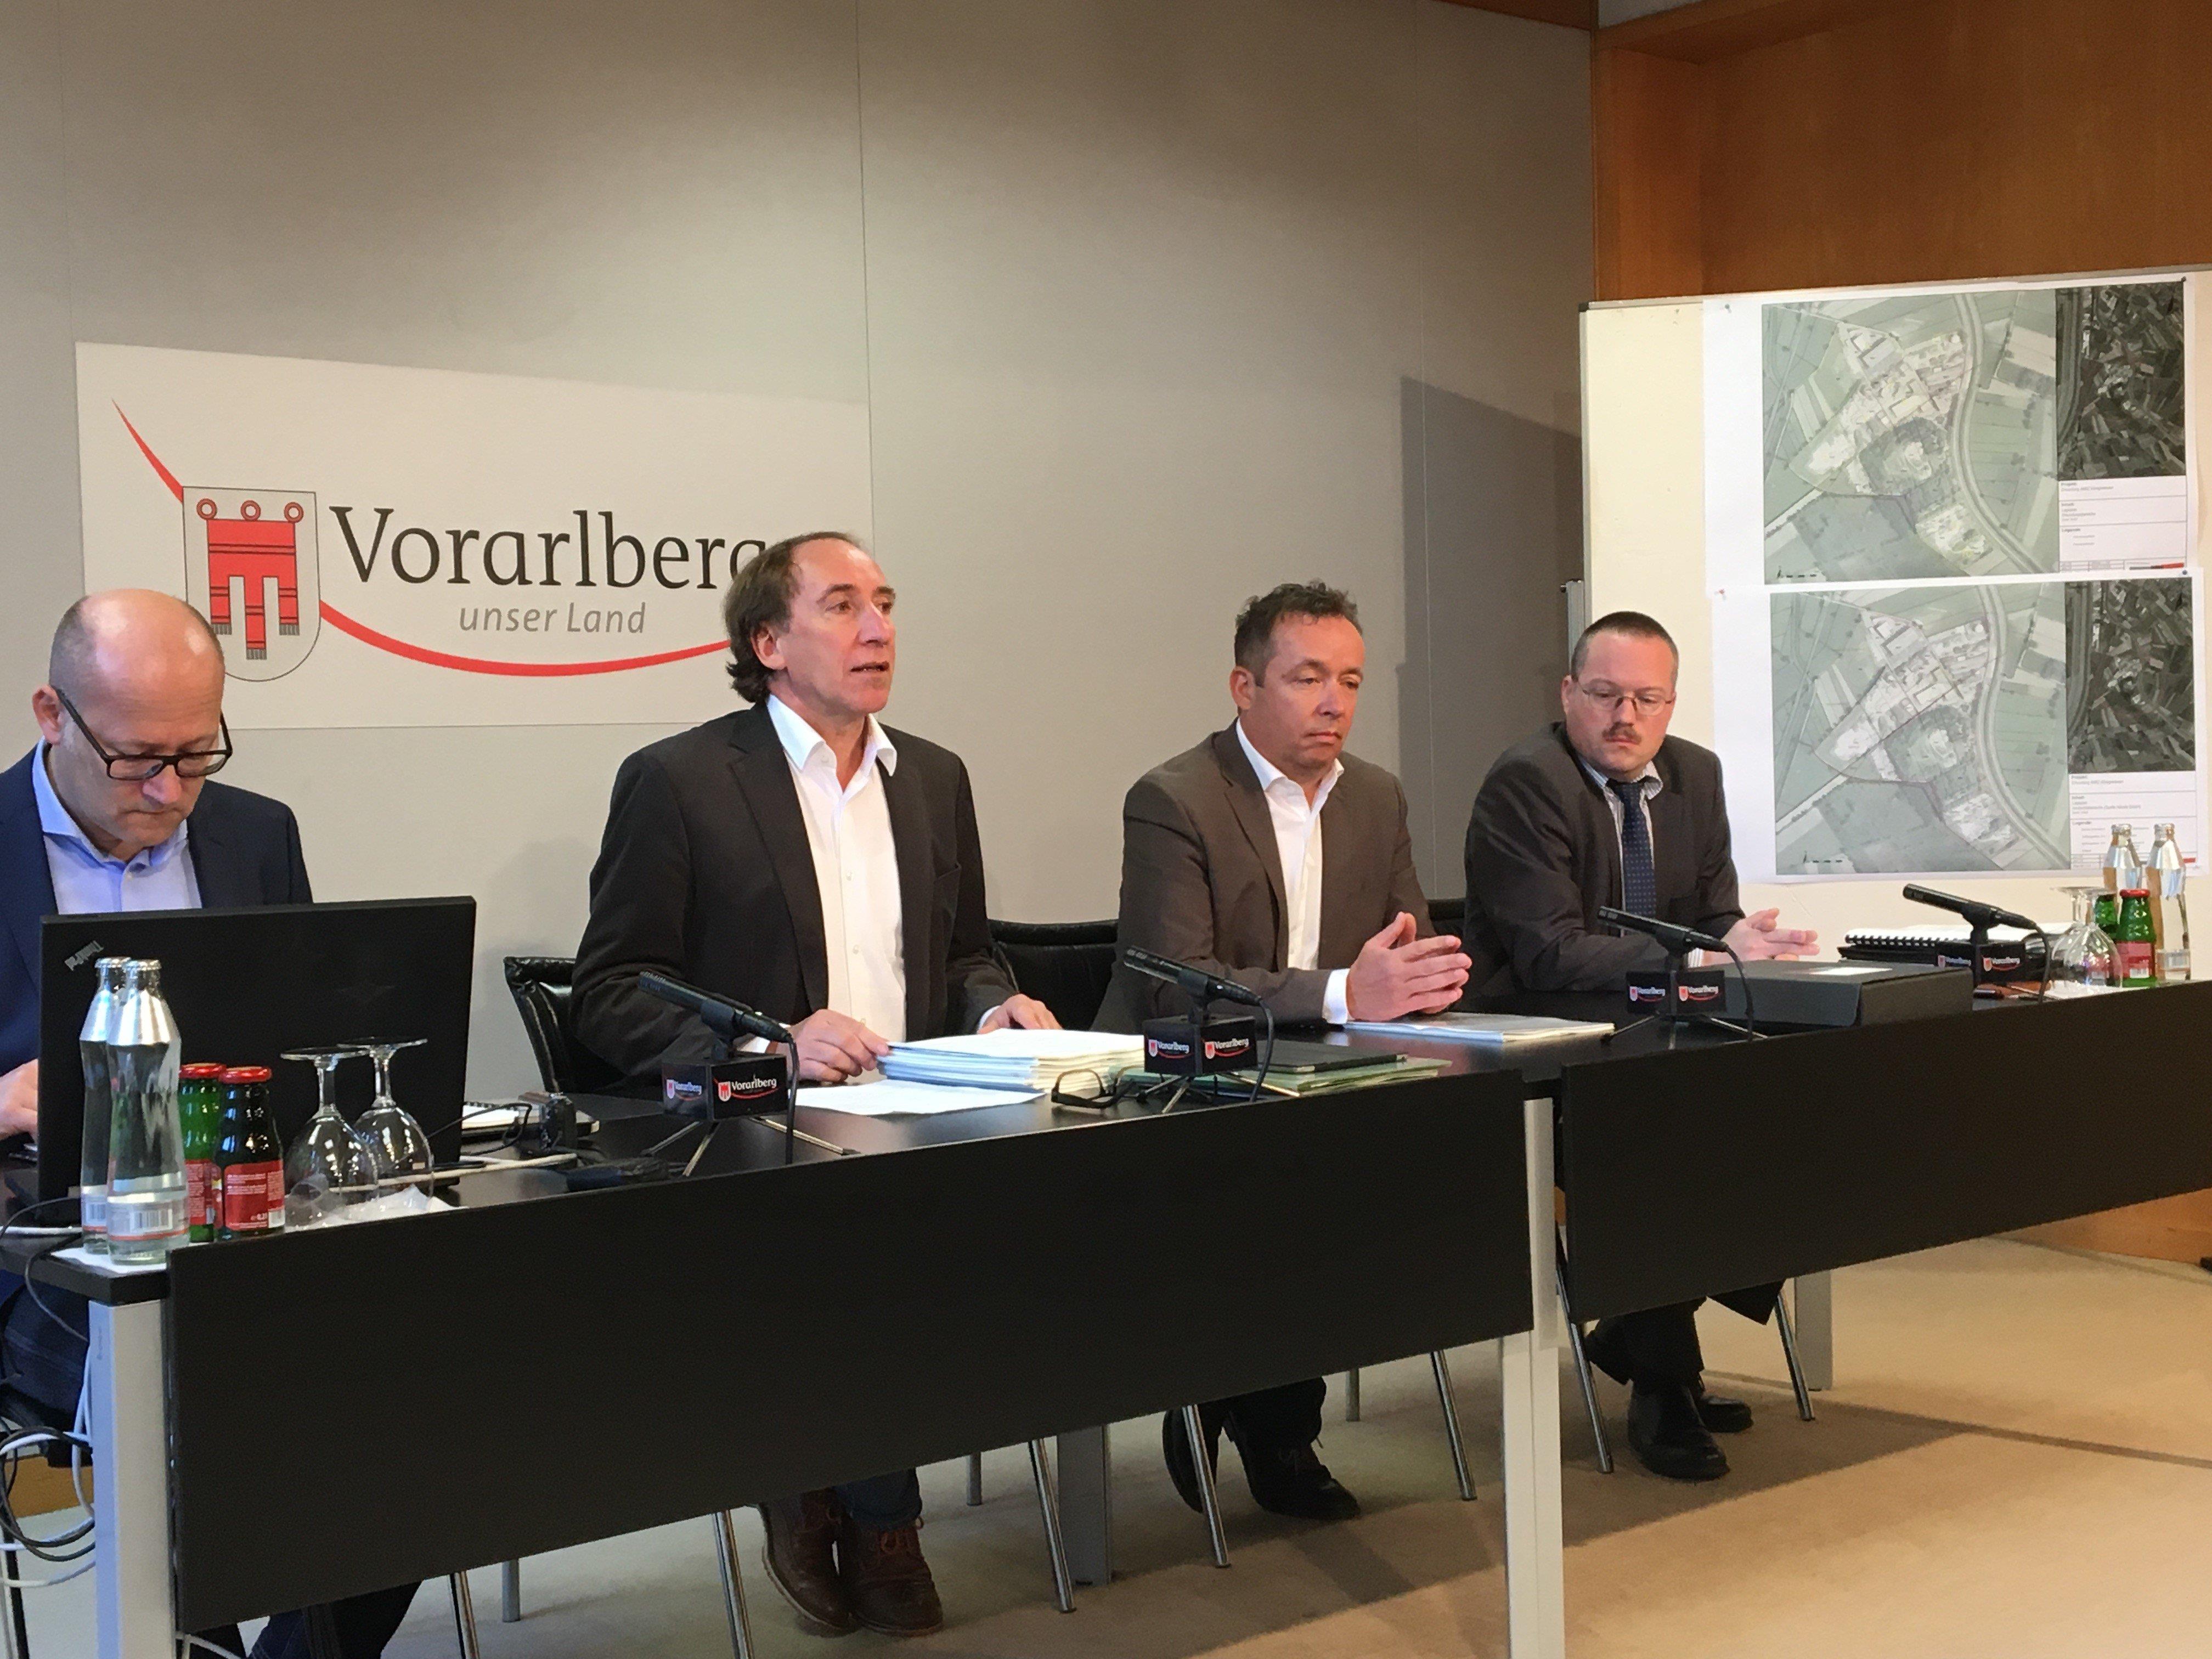 Der Erkundungsbericht der Vorarlberger Landesregierung im Fall Häusle wurde präsentiert.